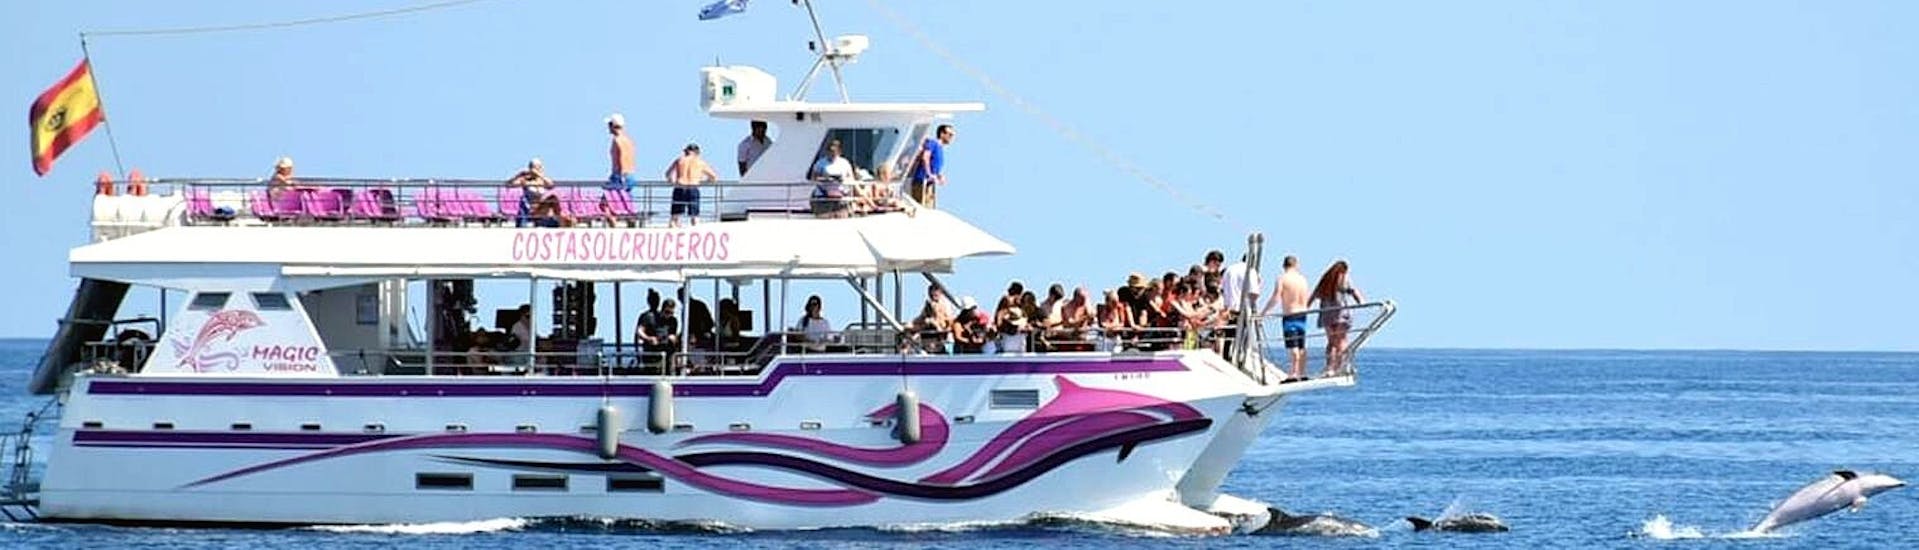 Il catamarano Magic Vision in crociera nella baia di Benalmadena con i partecipanti che si divertono a bordo, durante una gita in catamarano a Benalmádena con avvistamento dei delfini con Costasol Cruceros.